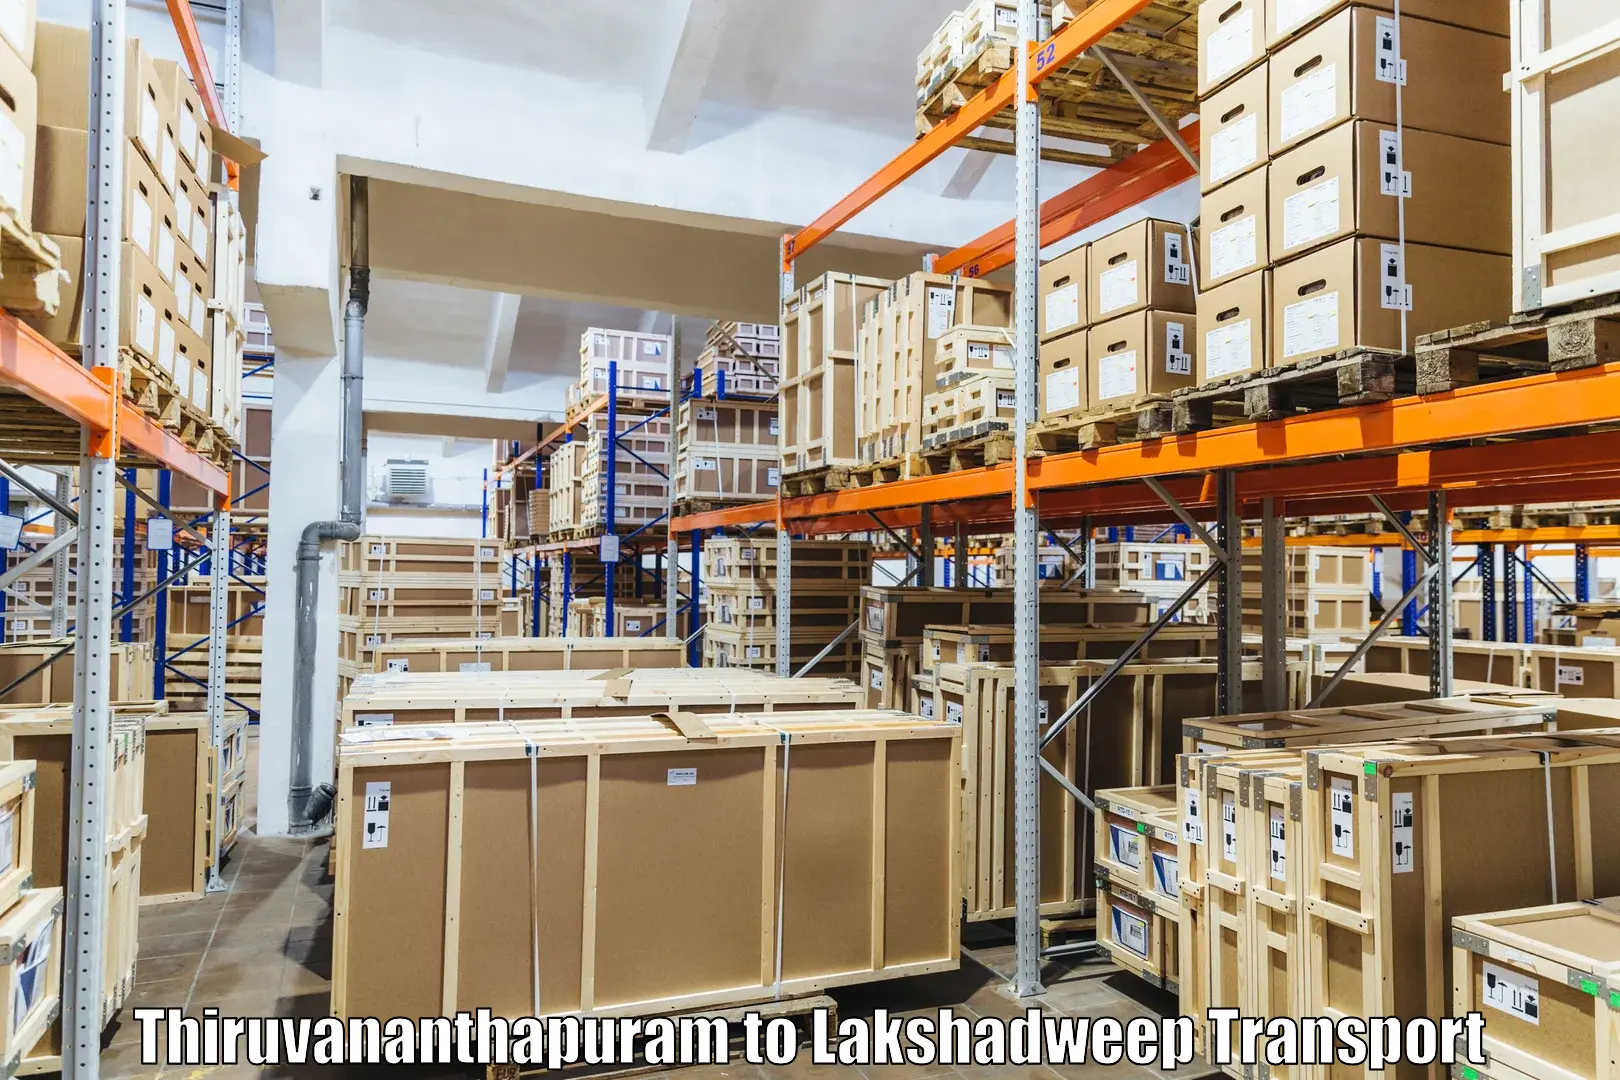 Transport in sharing Thiruvananthapuram to Lakshadweep